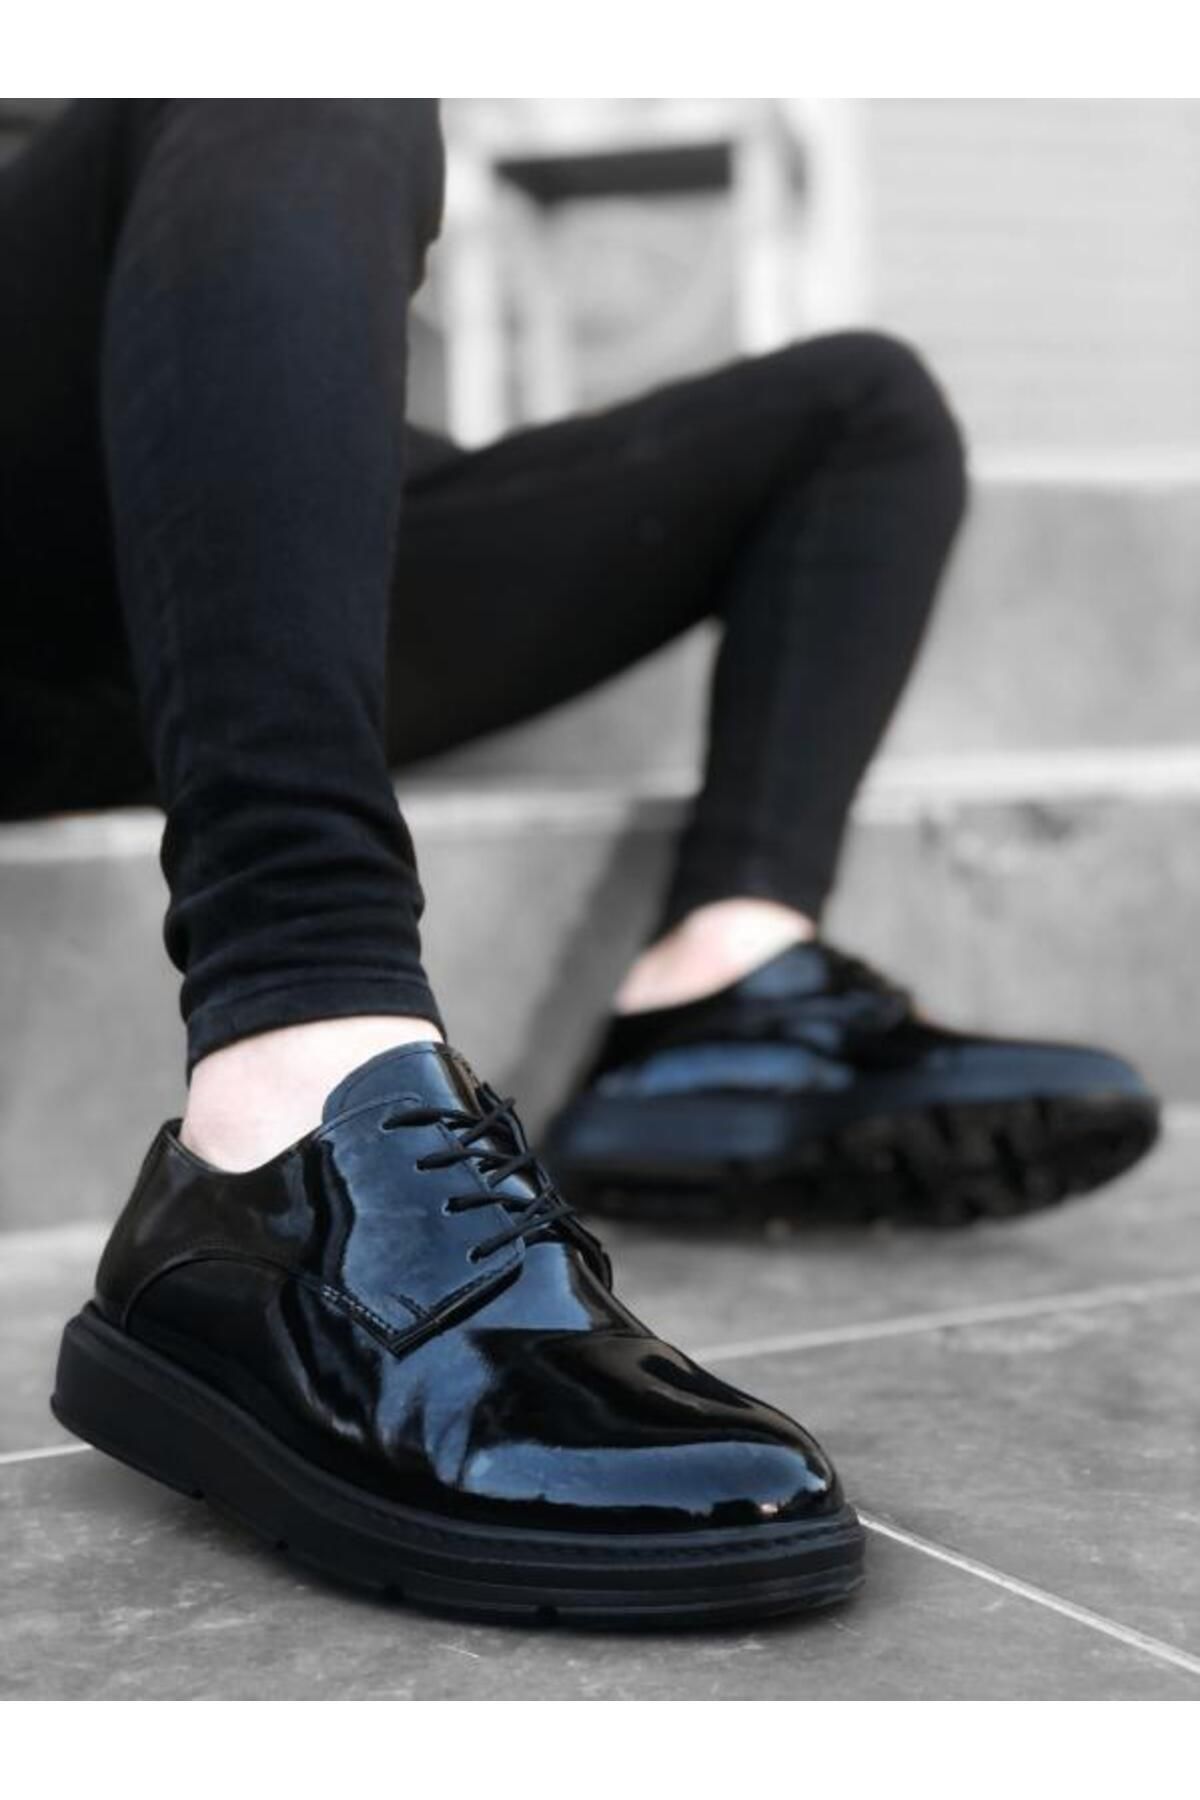 BOA Ba0003 Bağcıklı Klasik Siyah Siyah Taban Rugan Yüksek Taban Casual Erkek Ayakkabı